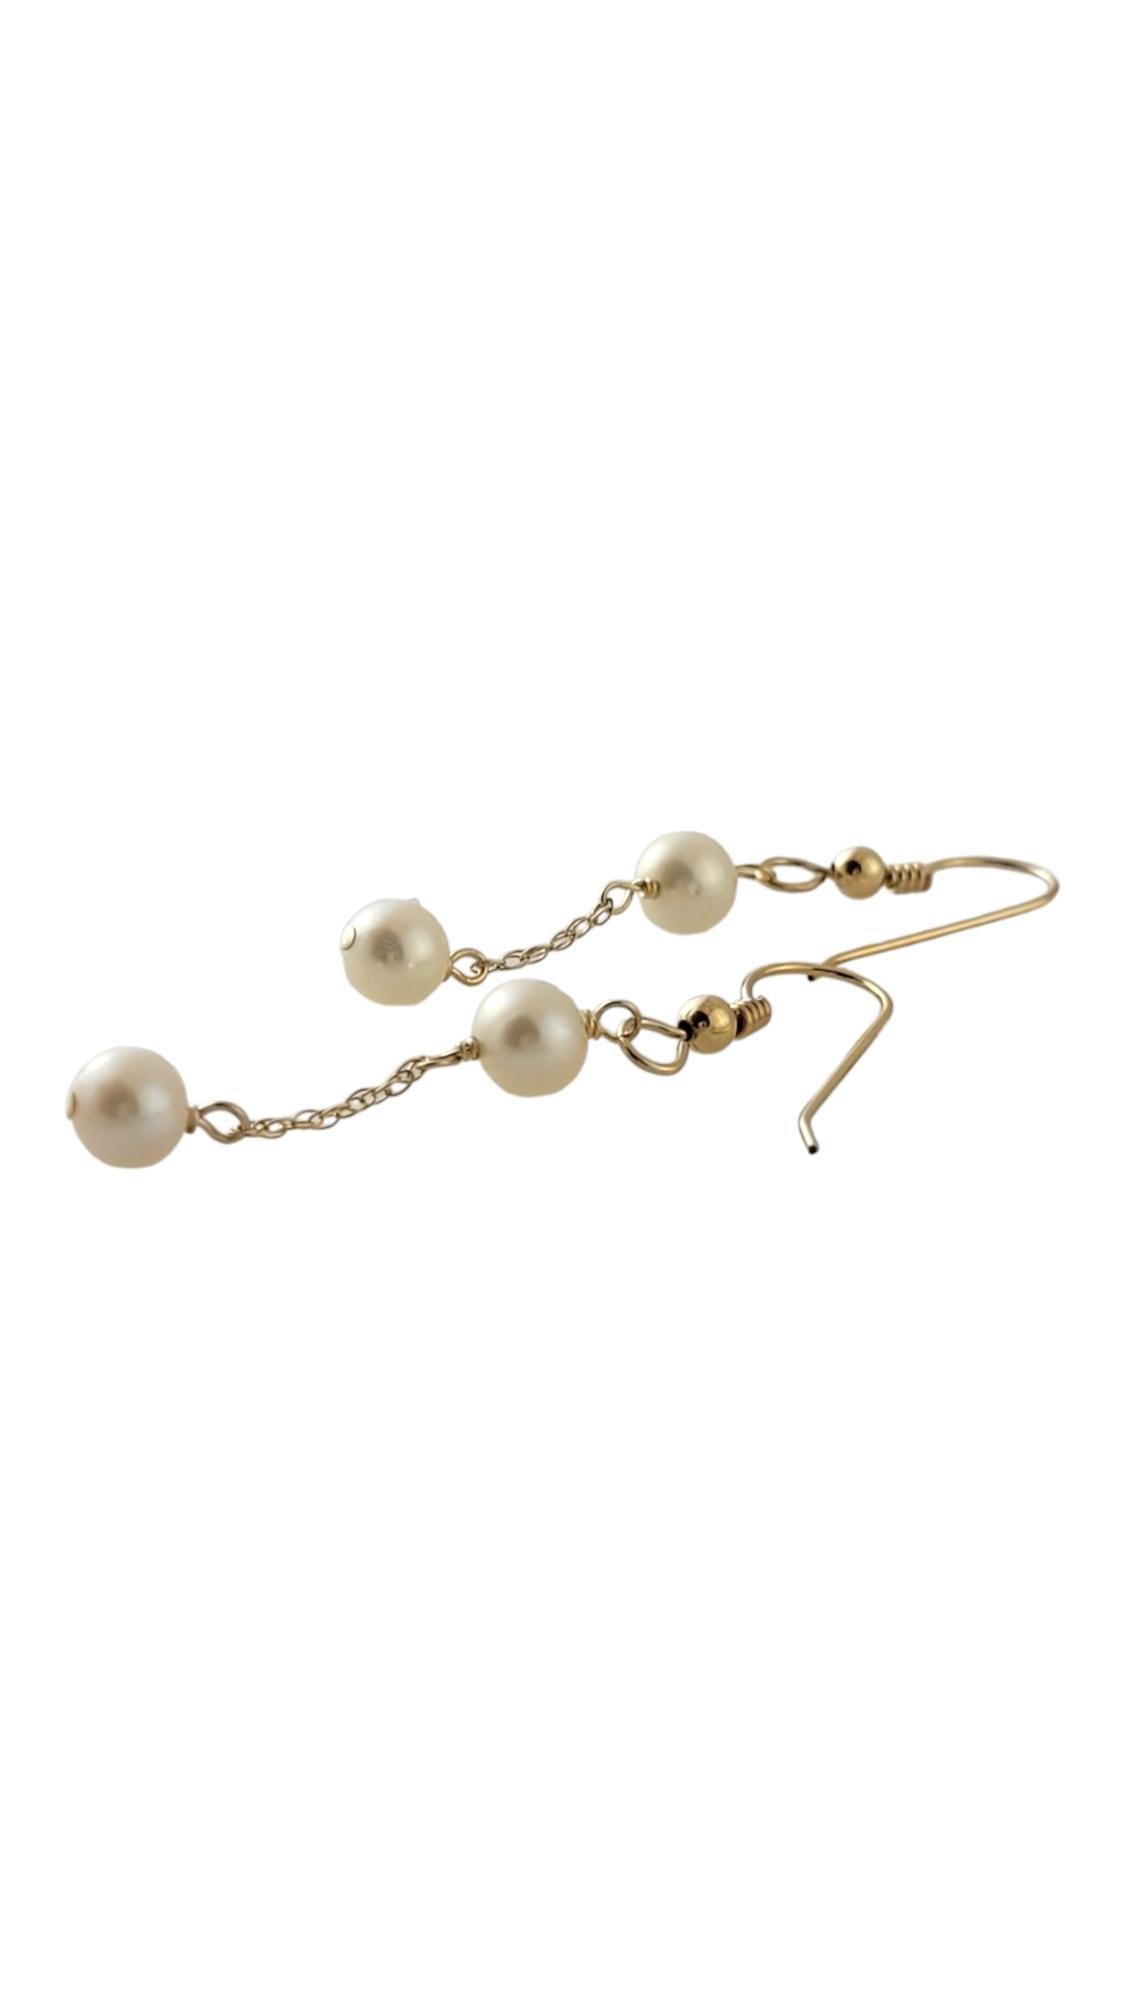 Boucles d'oreilles pendantes en or jaune 10K avec perles

Cette magnifique paire de boucles d'oreilles pendantes est composée de 4 perles blanches époustouflantes !

Perles : 6,1 mm

Taille : 45mm X 6 mm X 6 mm

Poids : 1,0 dwt/ 1,7 g

Testé